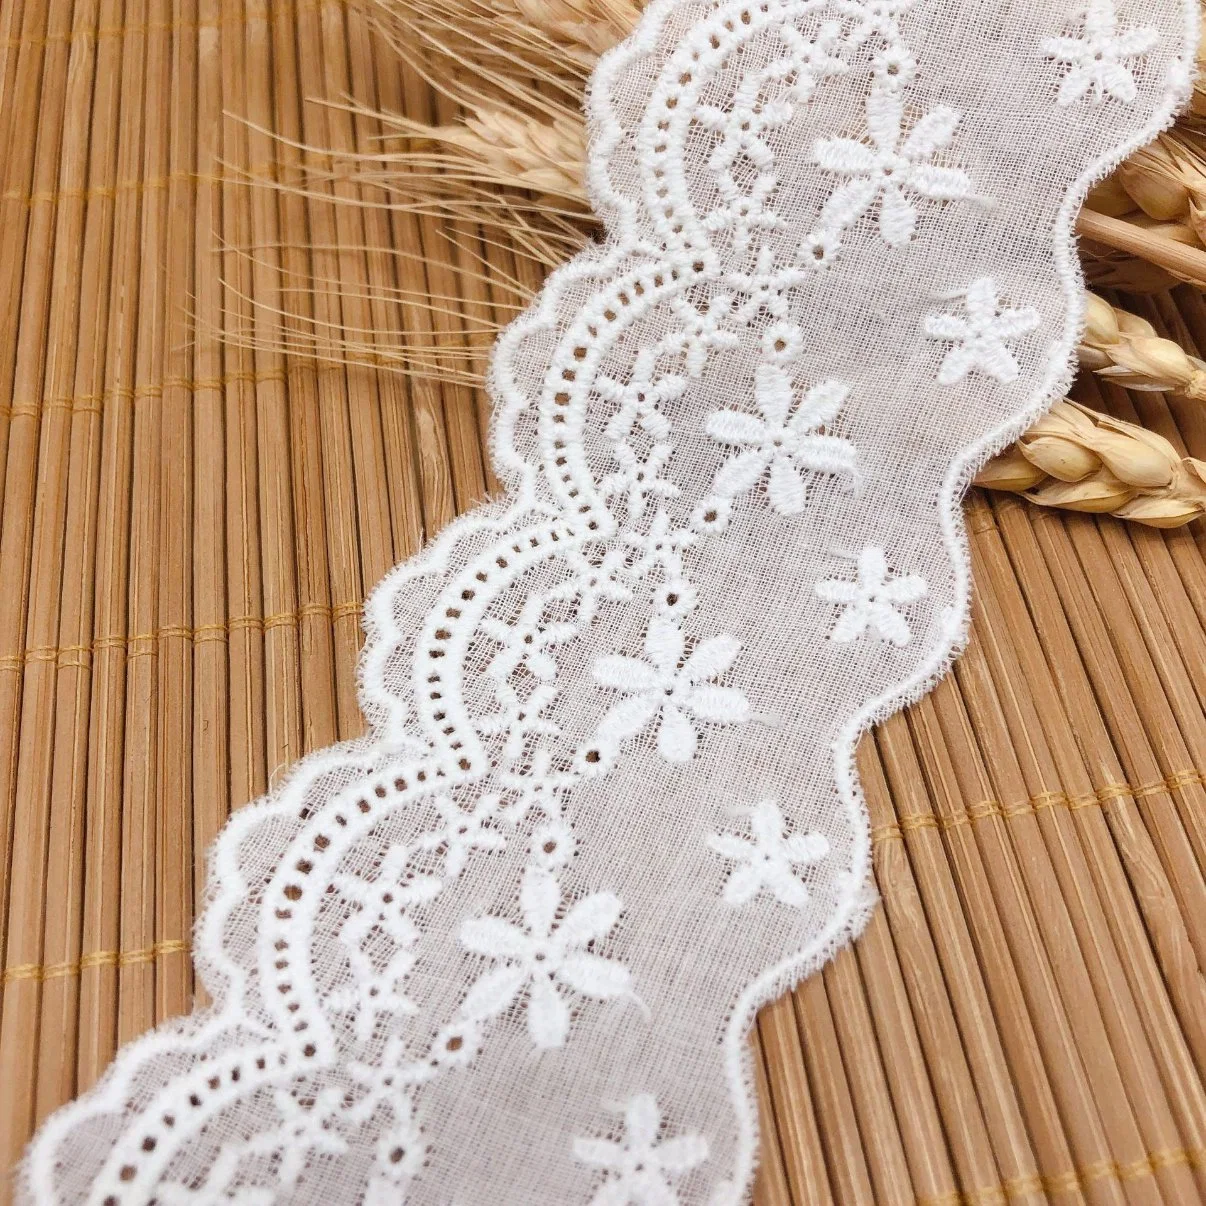 Renda de dois lados de algodão Código de barras Home tecido de renda decorativo macio solúvel em água Vestuário bordado Acessórios